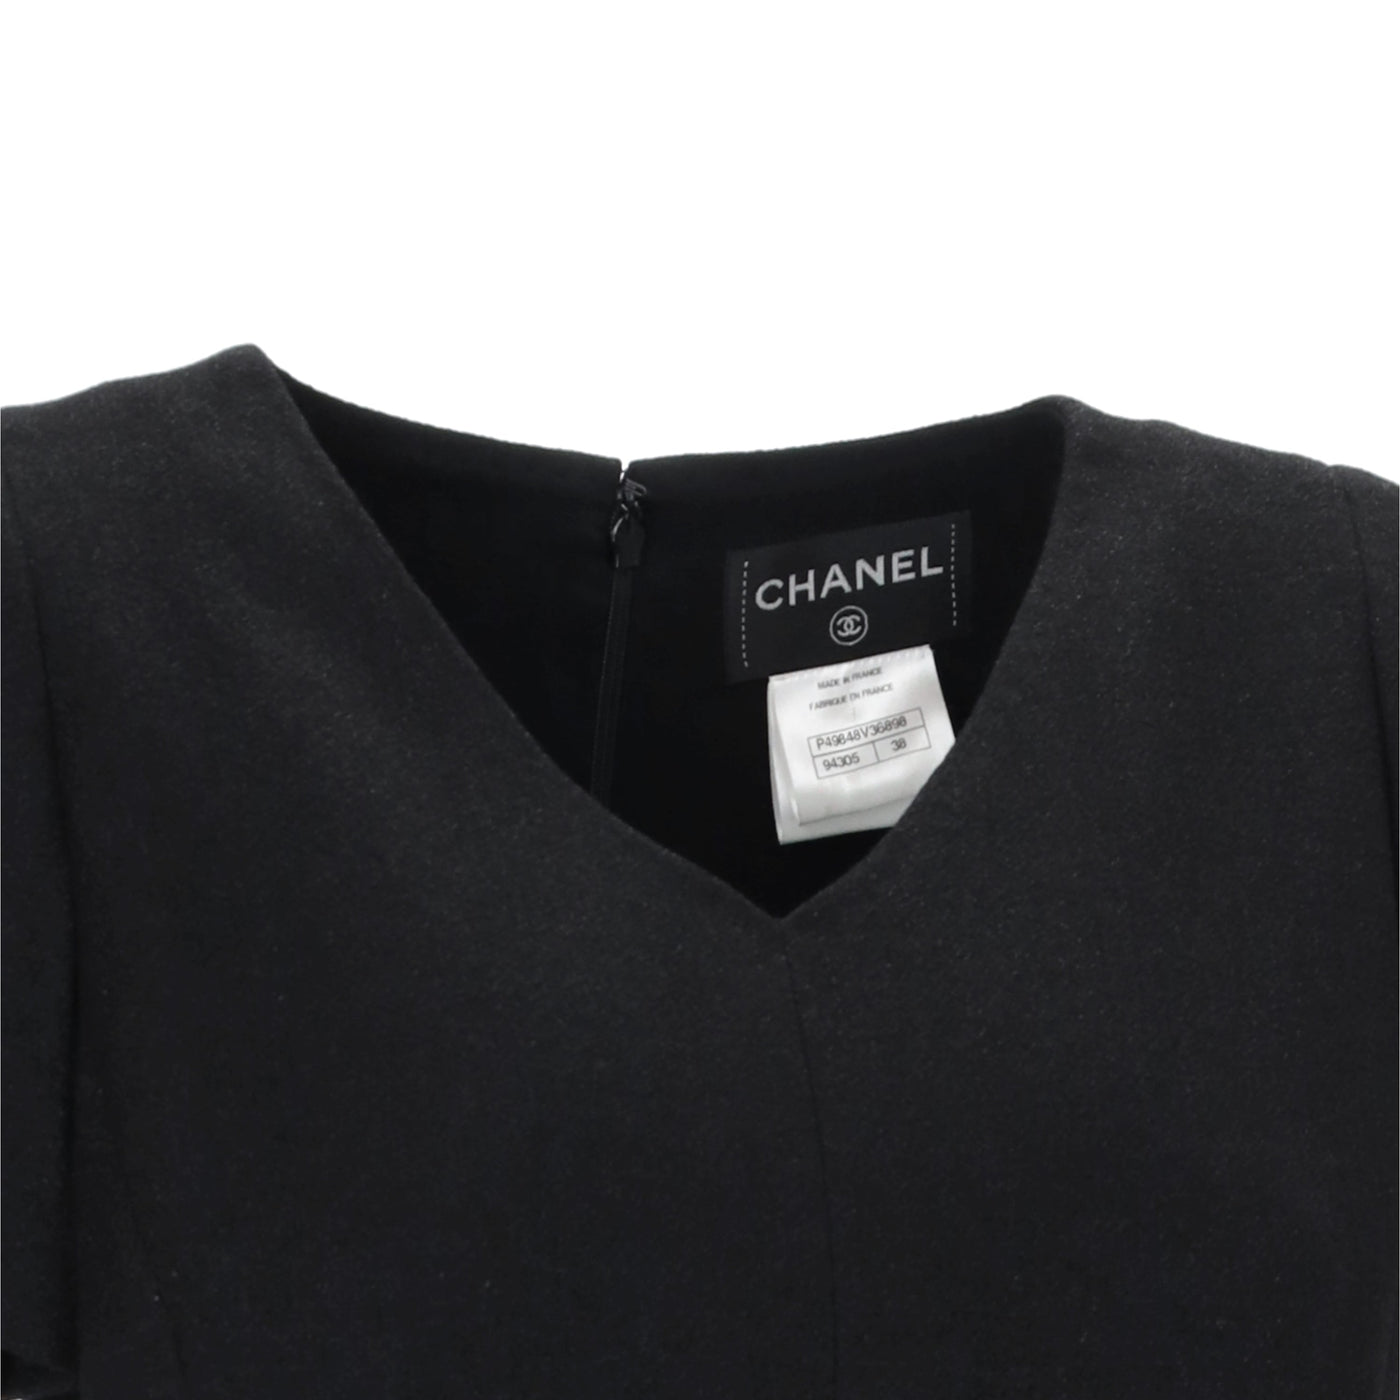 Secondhand Chanel V-neck Black Shimmer Dress